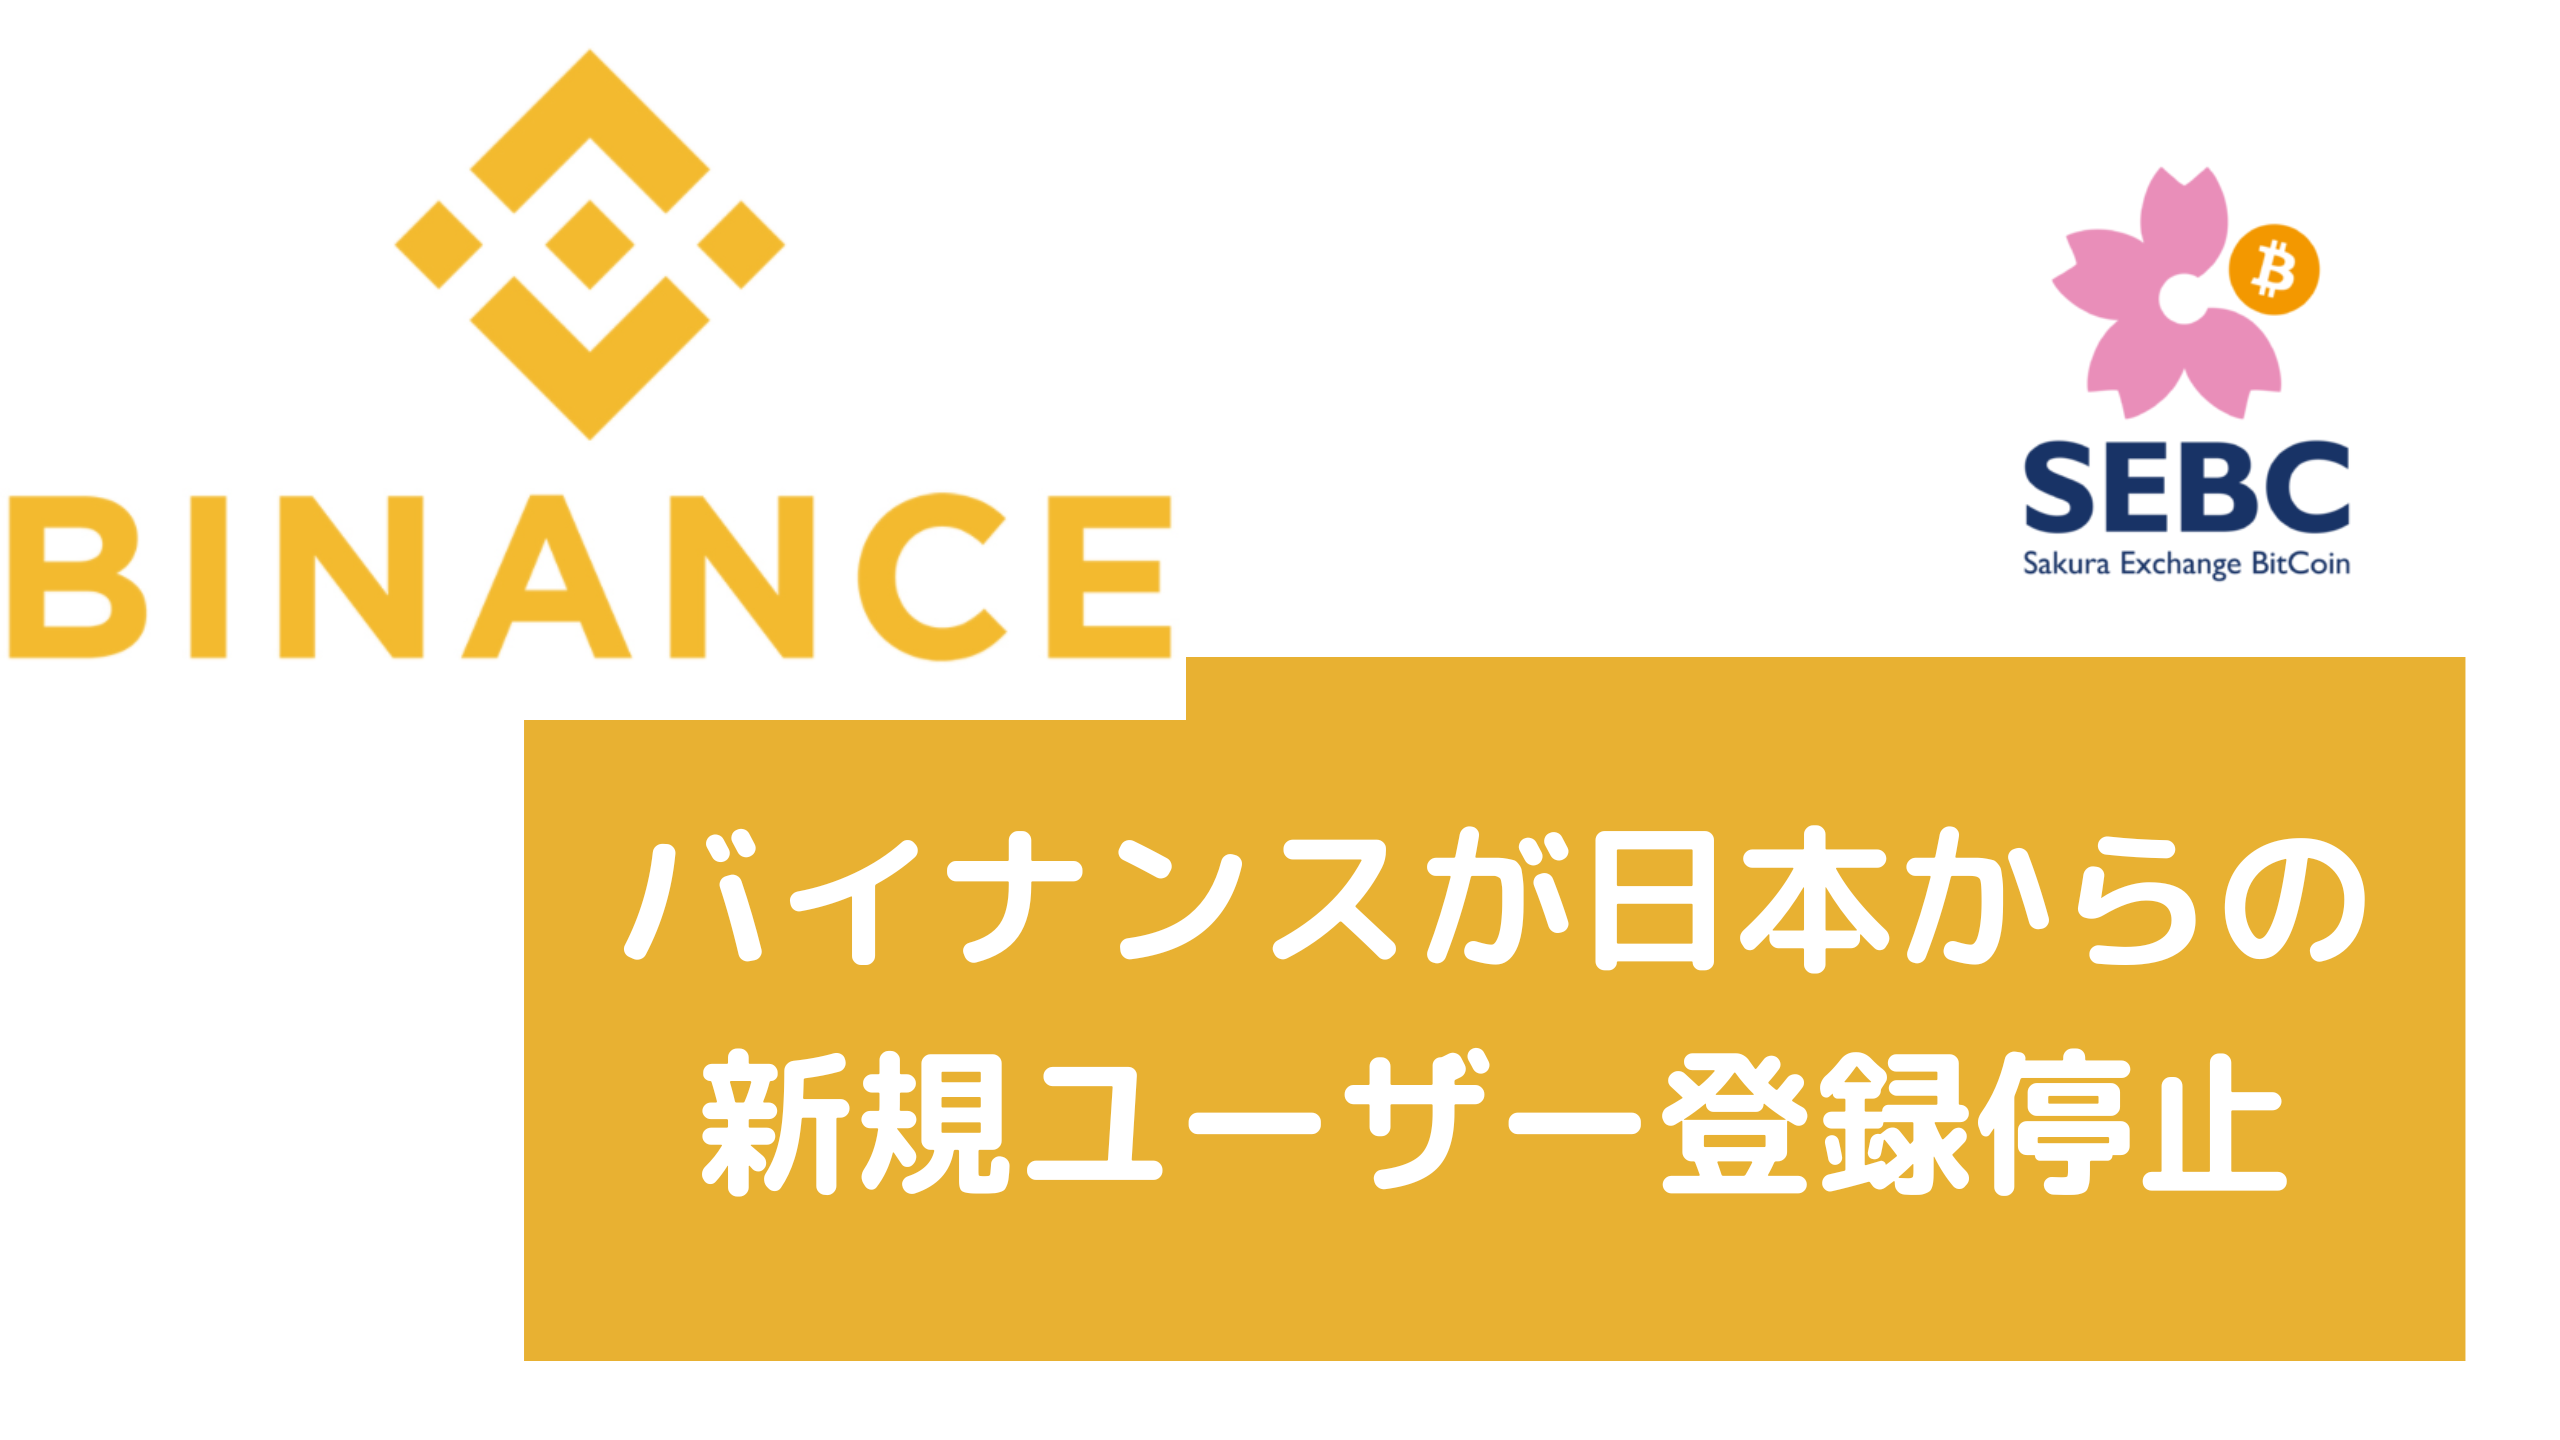 バイナンスが日本からの 新規ユーザー登録停止